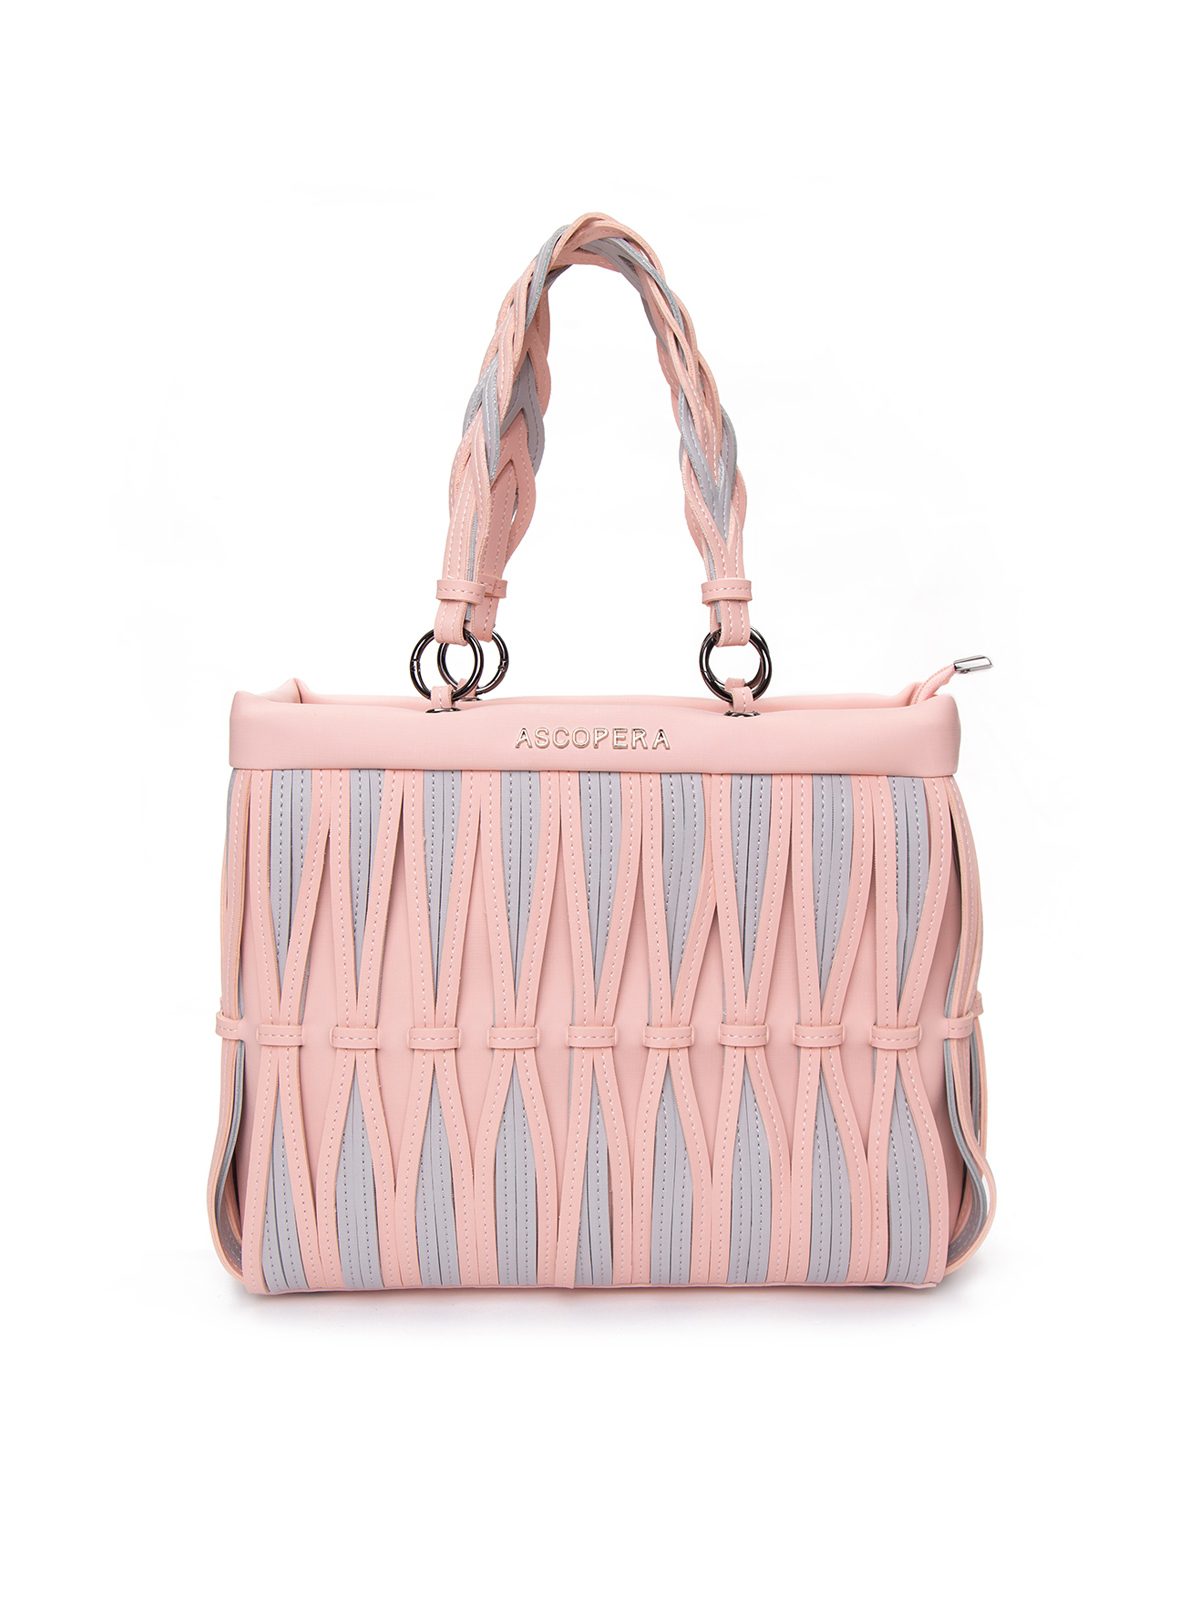 Ascopera dámská kabelka Hedera, Flamingo Pink